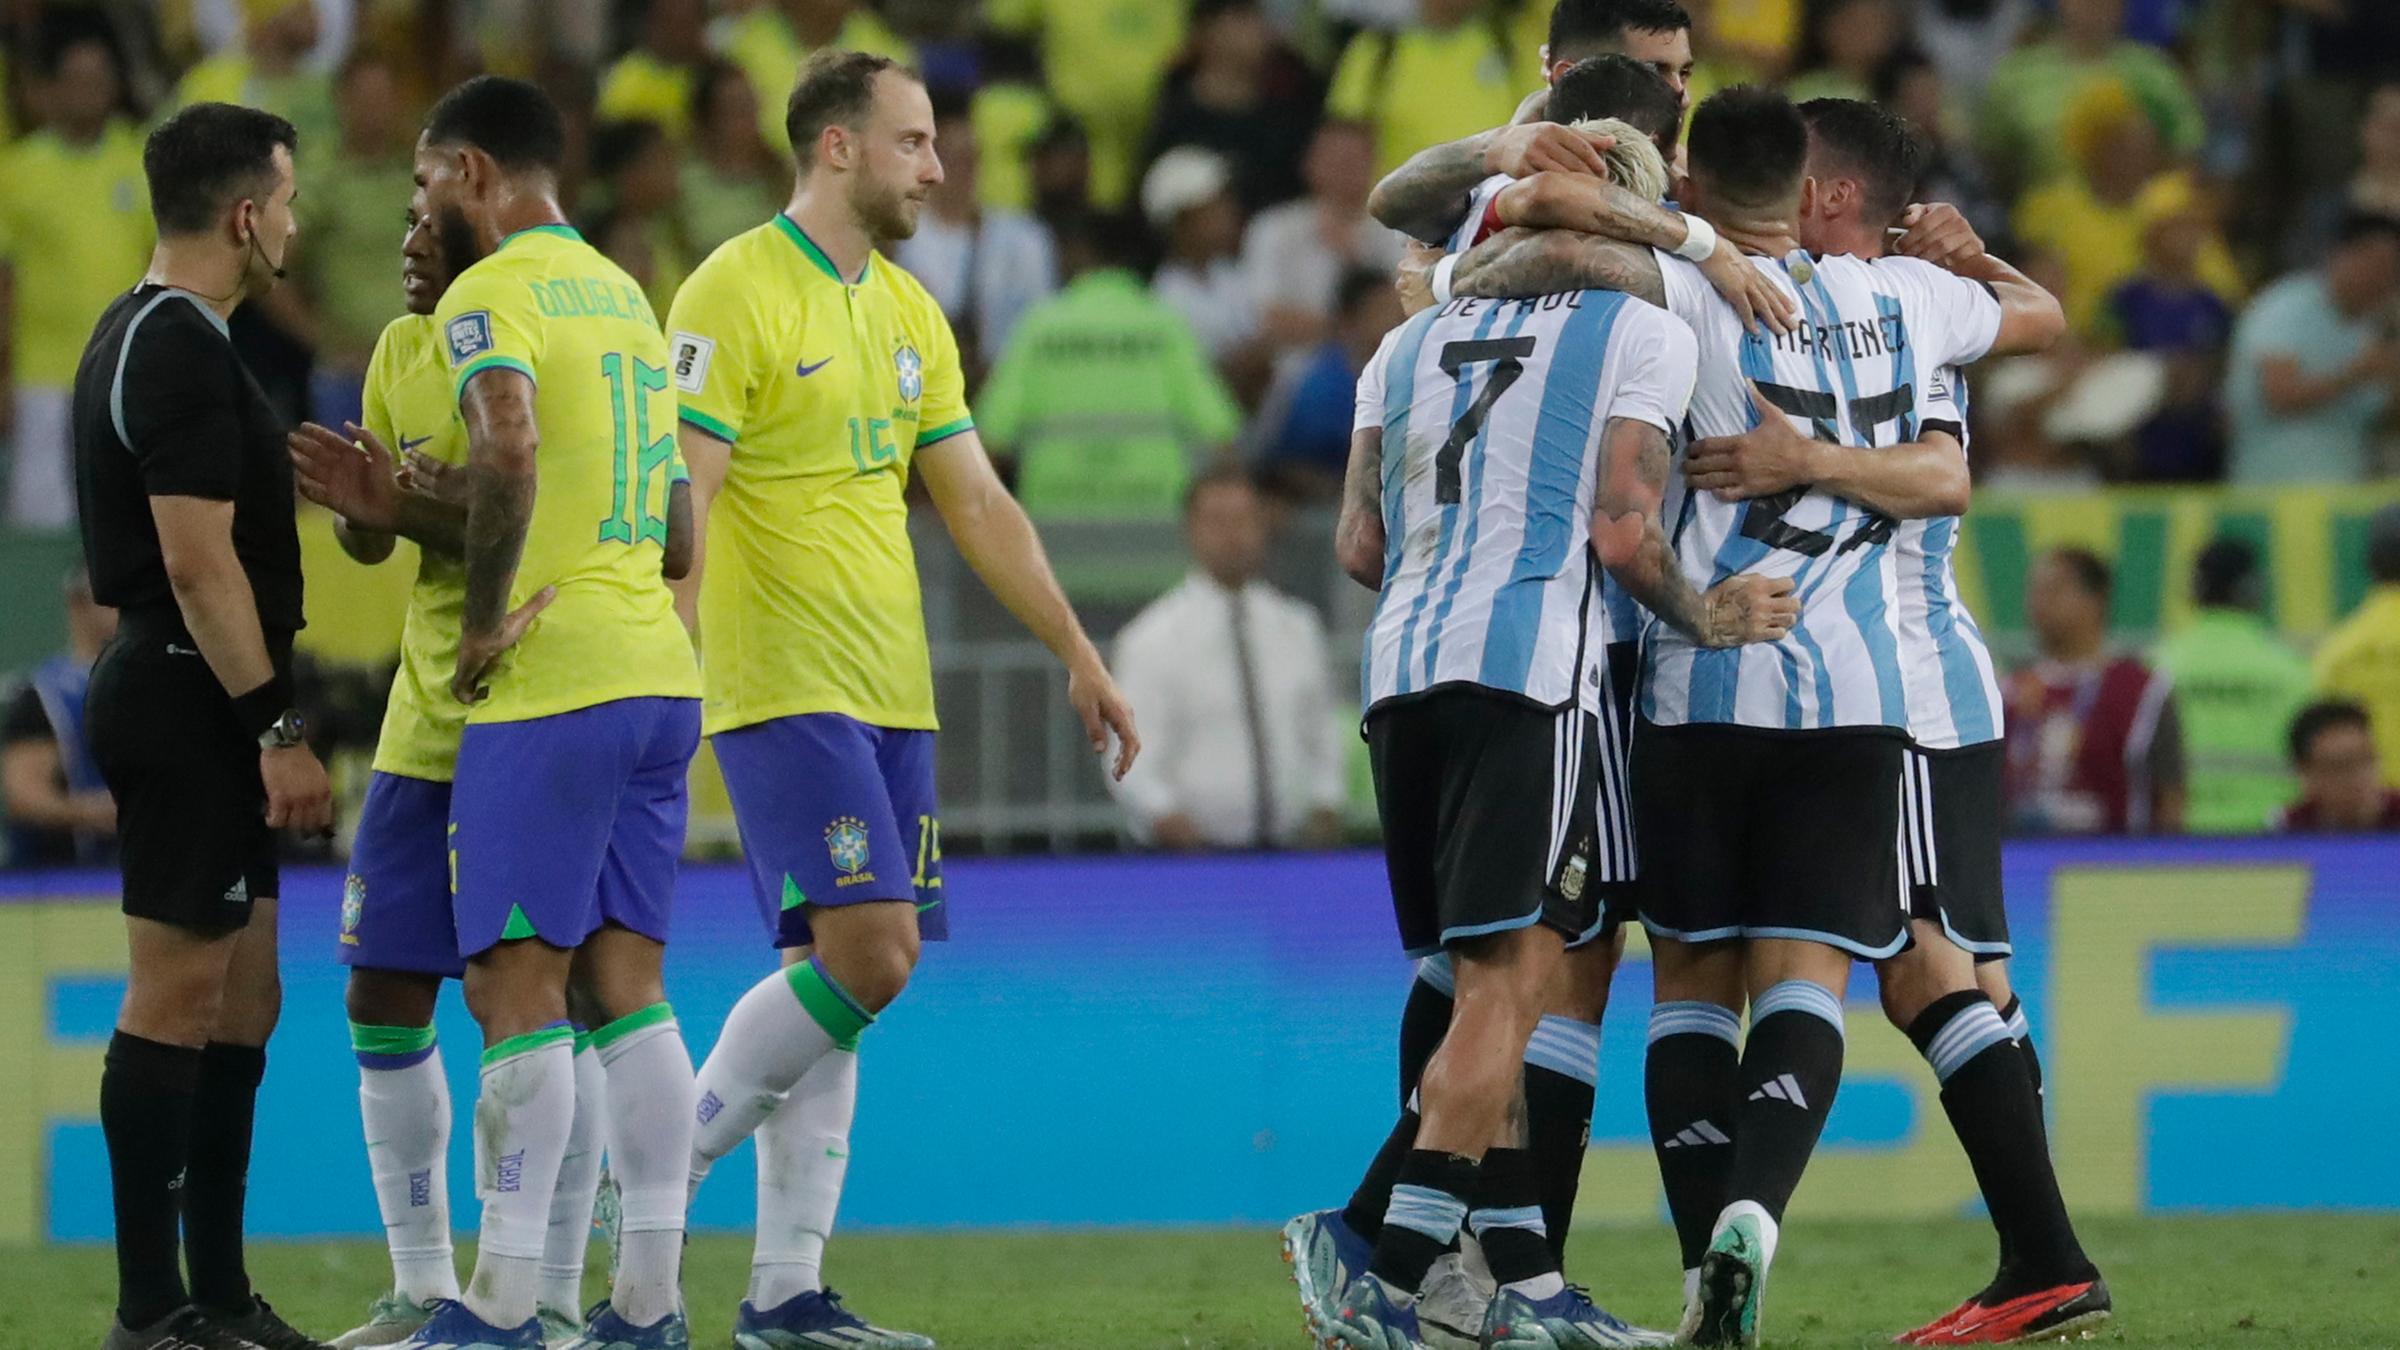 Brasilien v Argentinien, Viertelfinale